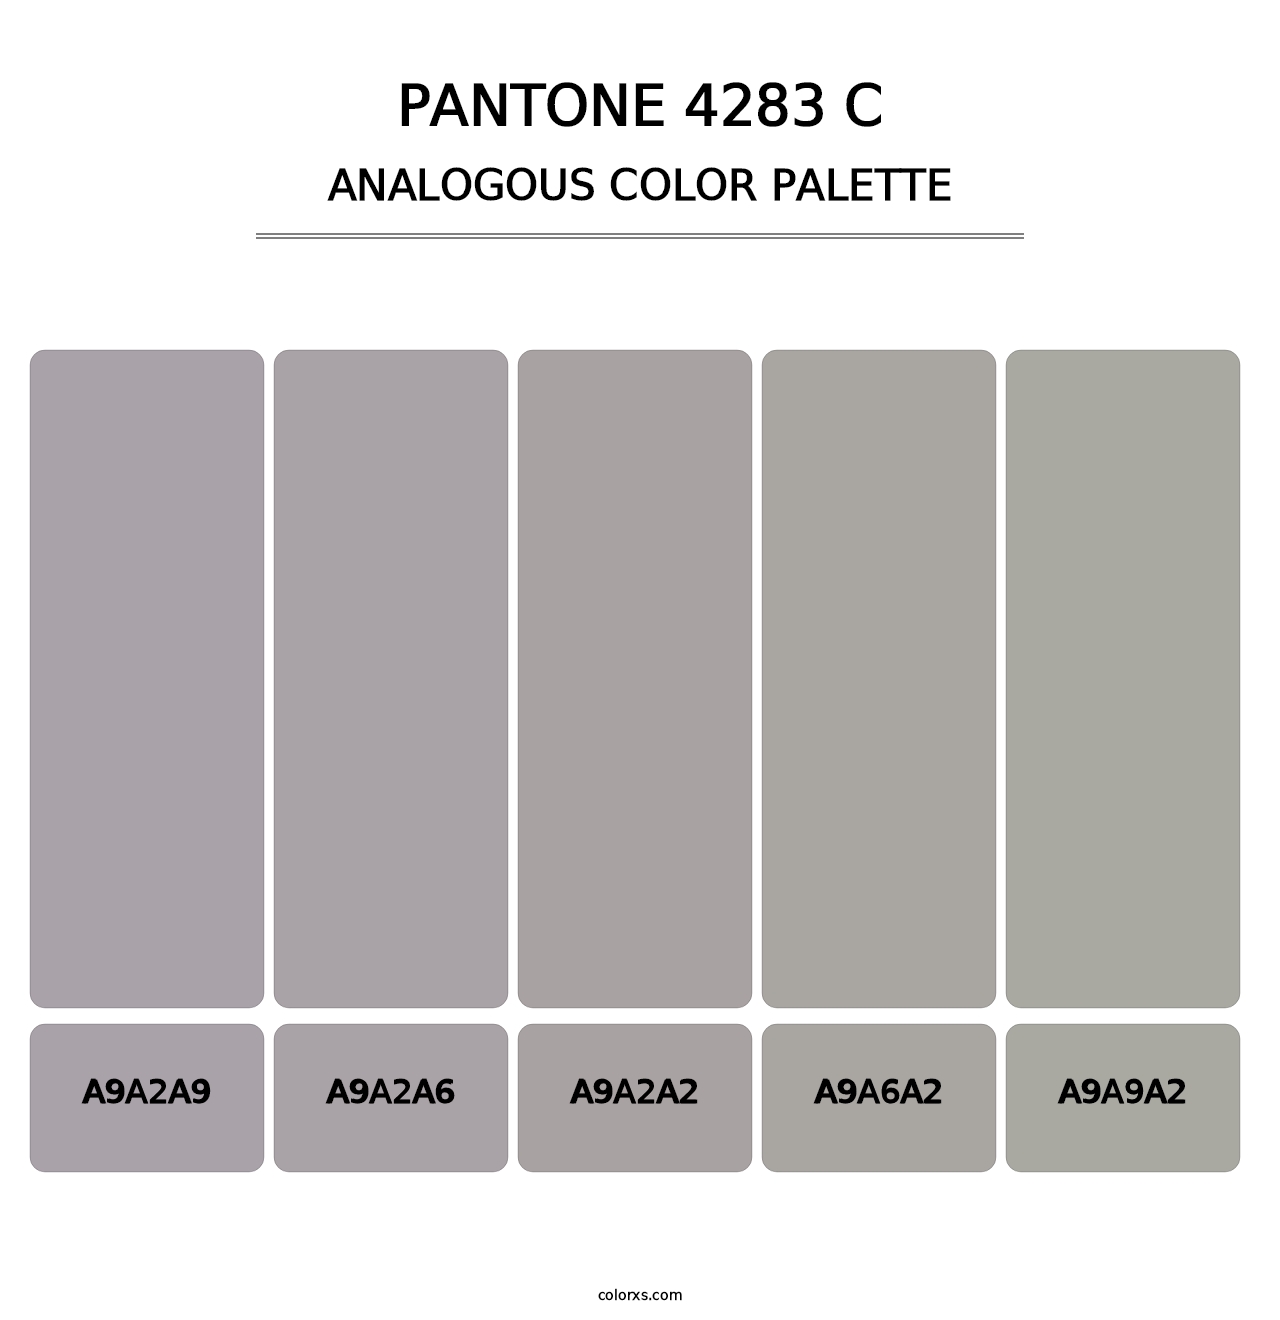 PANTONE 4283 C - Analogous Color Palette